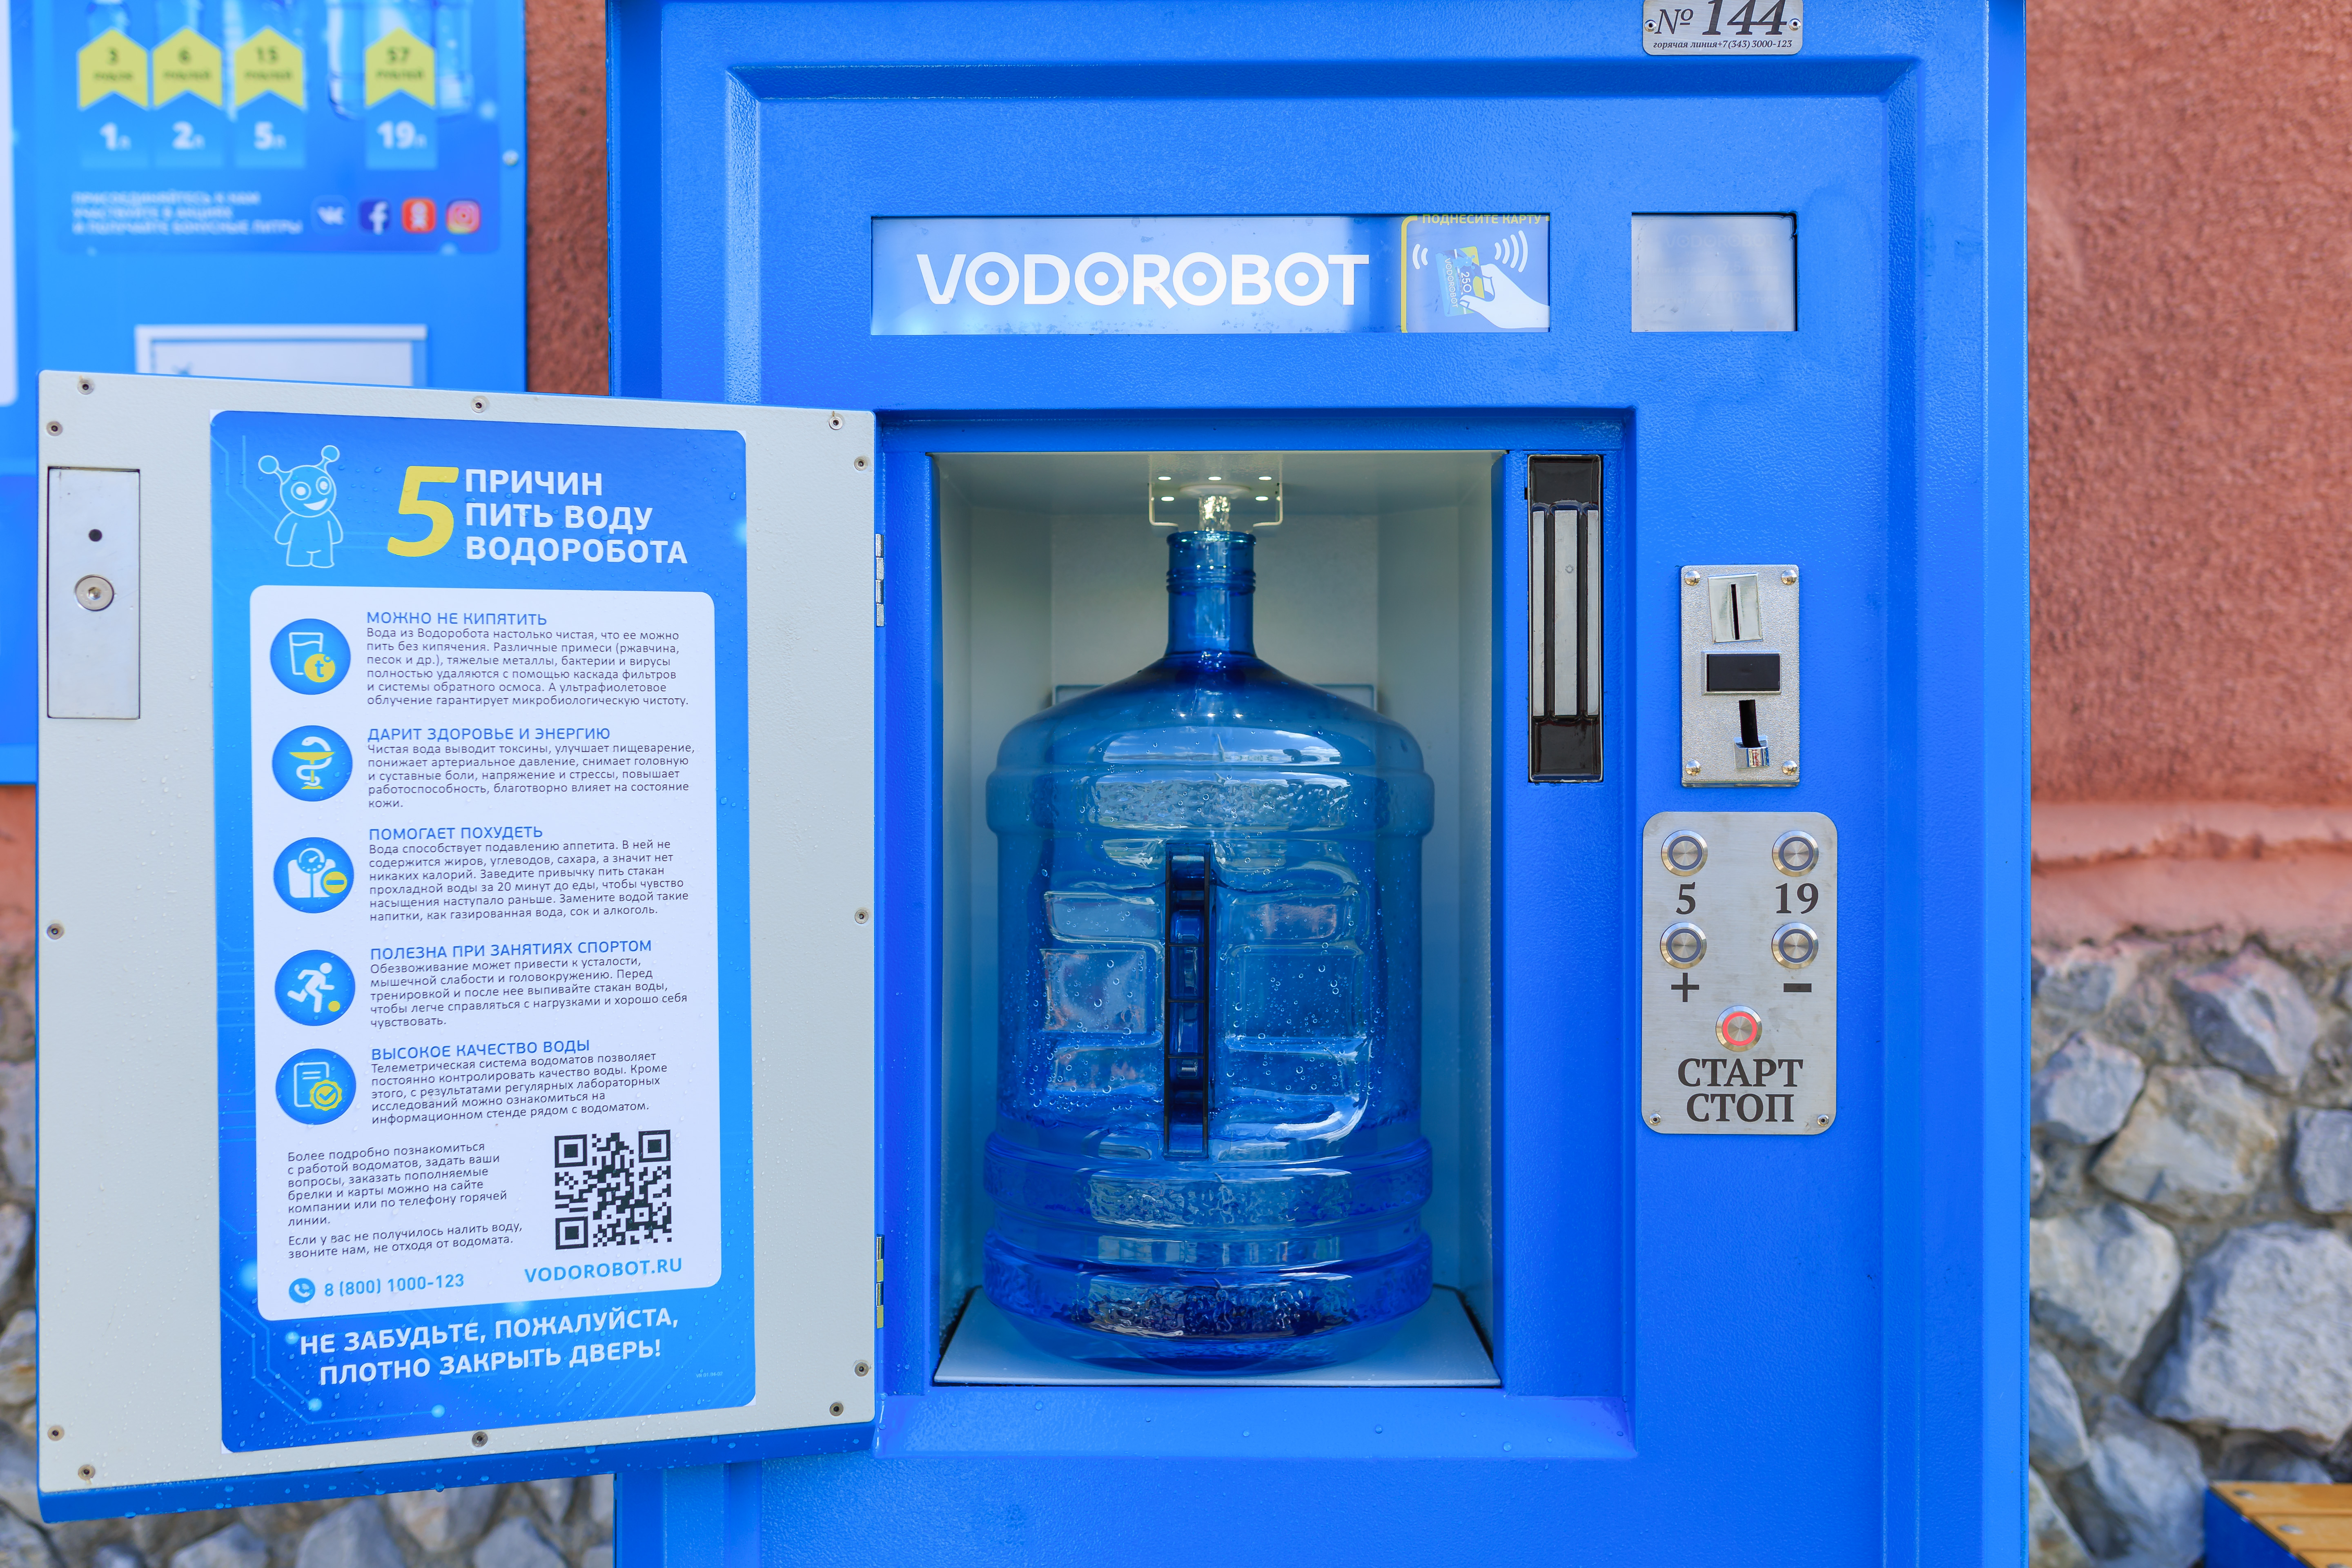 Питьевая вода пермь. Автомат питьевой воды. Автомат с бутилированной водой. Водоробот автомат. Аппарат для питьевой воды на улице.